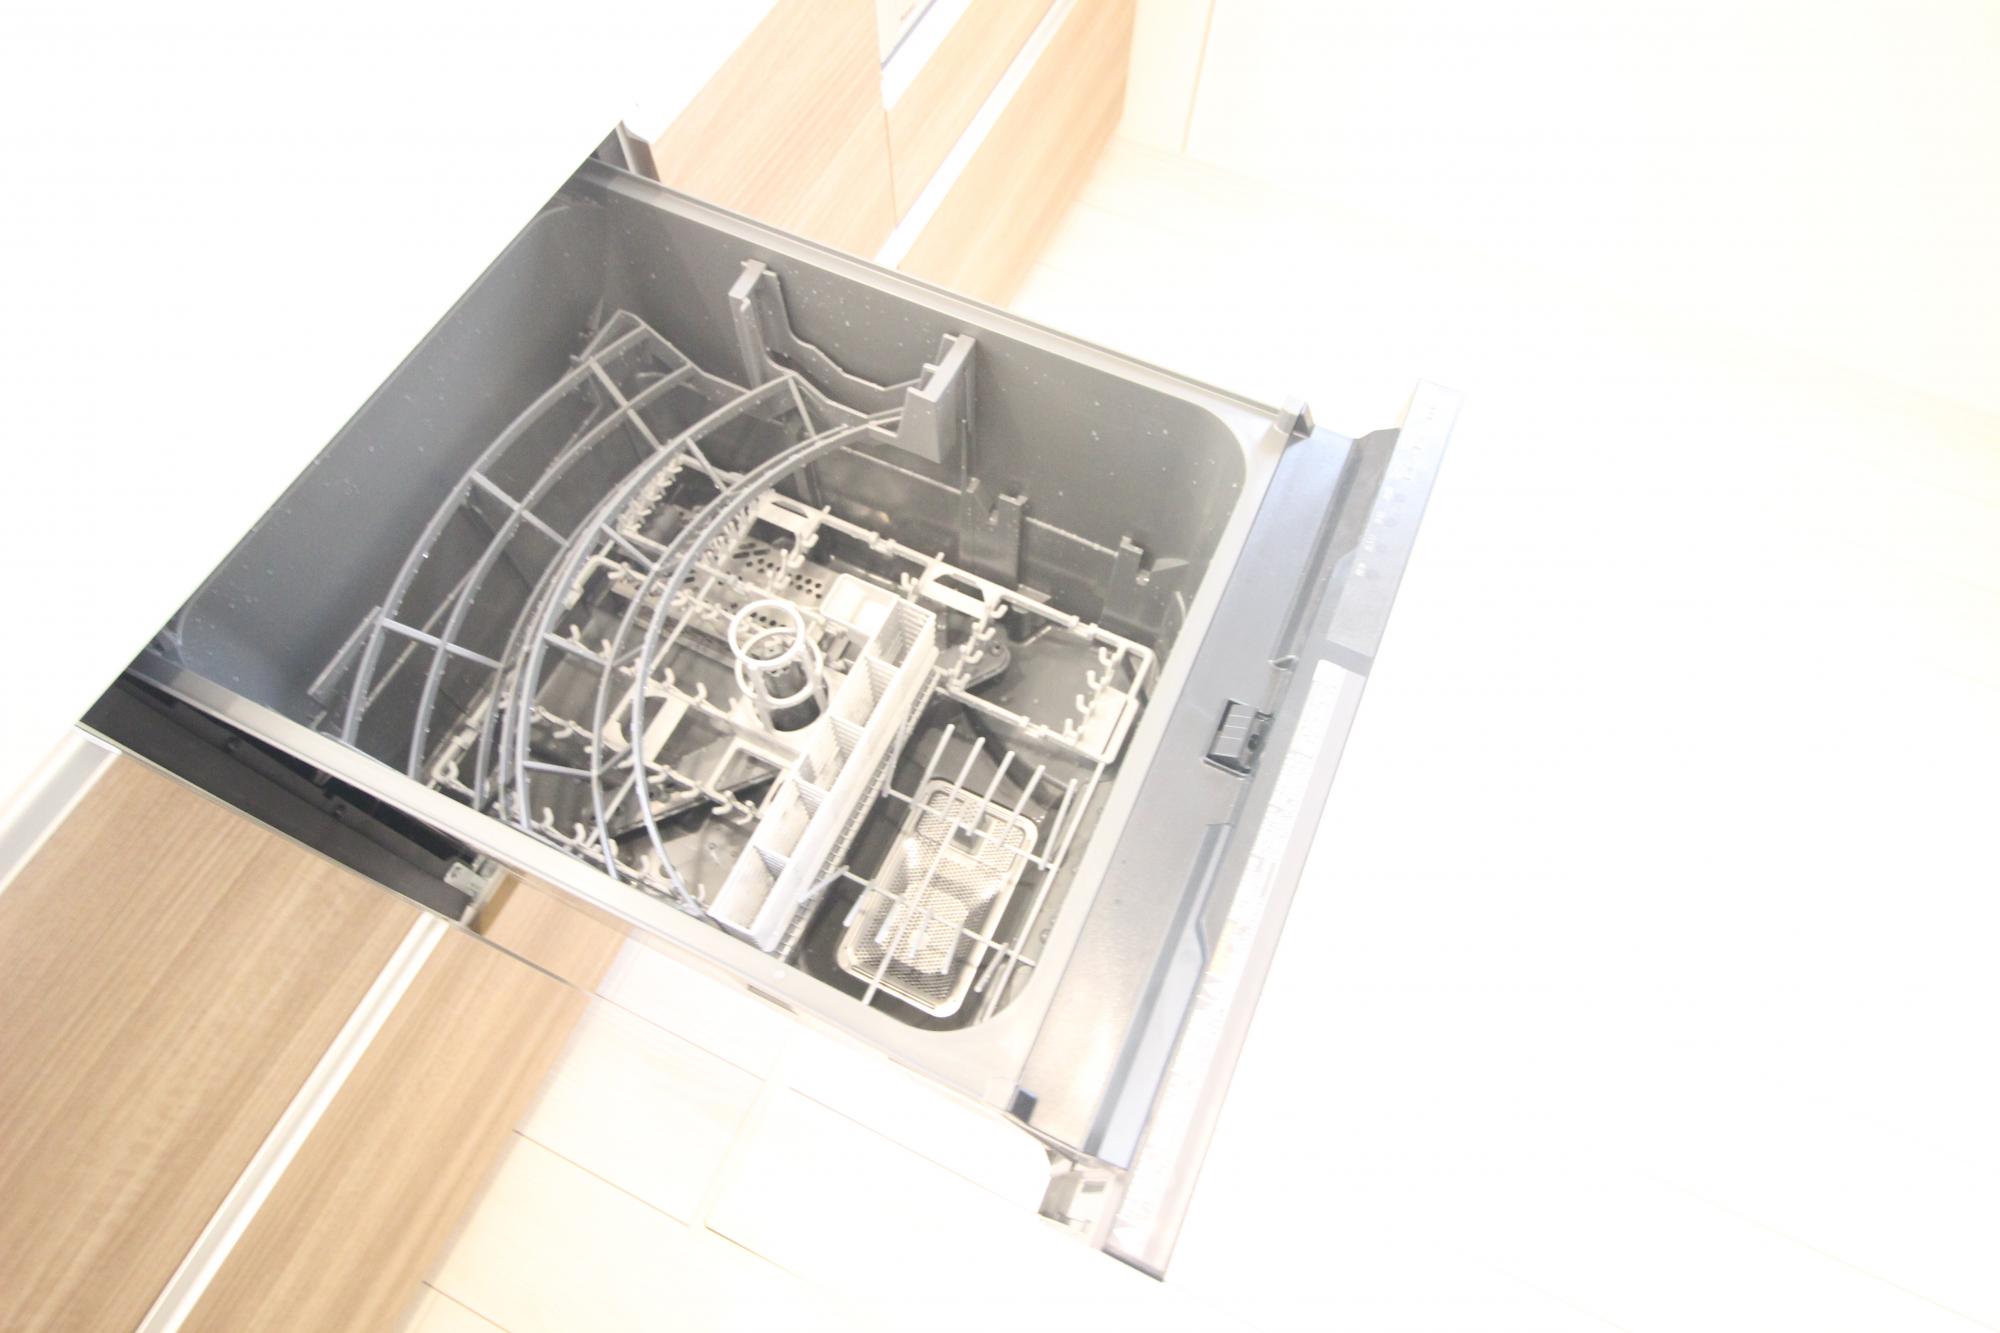 4号棟　食洗機　毎日の家事に便利な食洗機が備え付け!手荒れの時期にも嬉しいですね!
